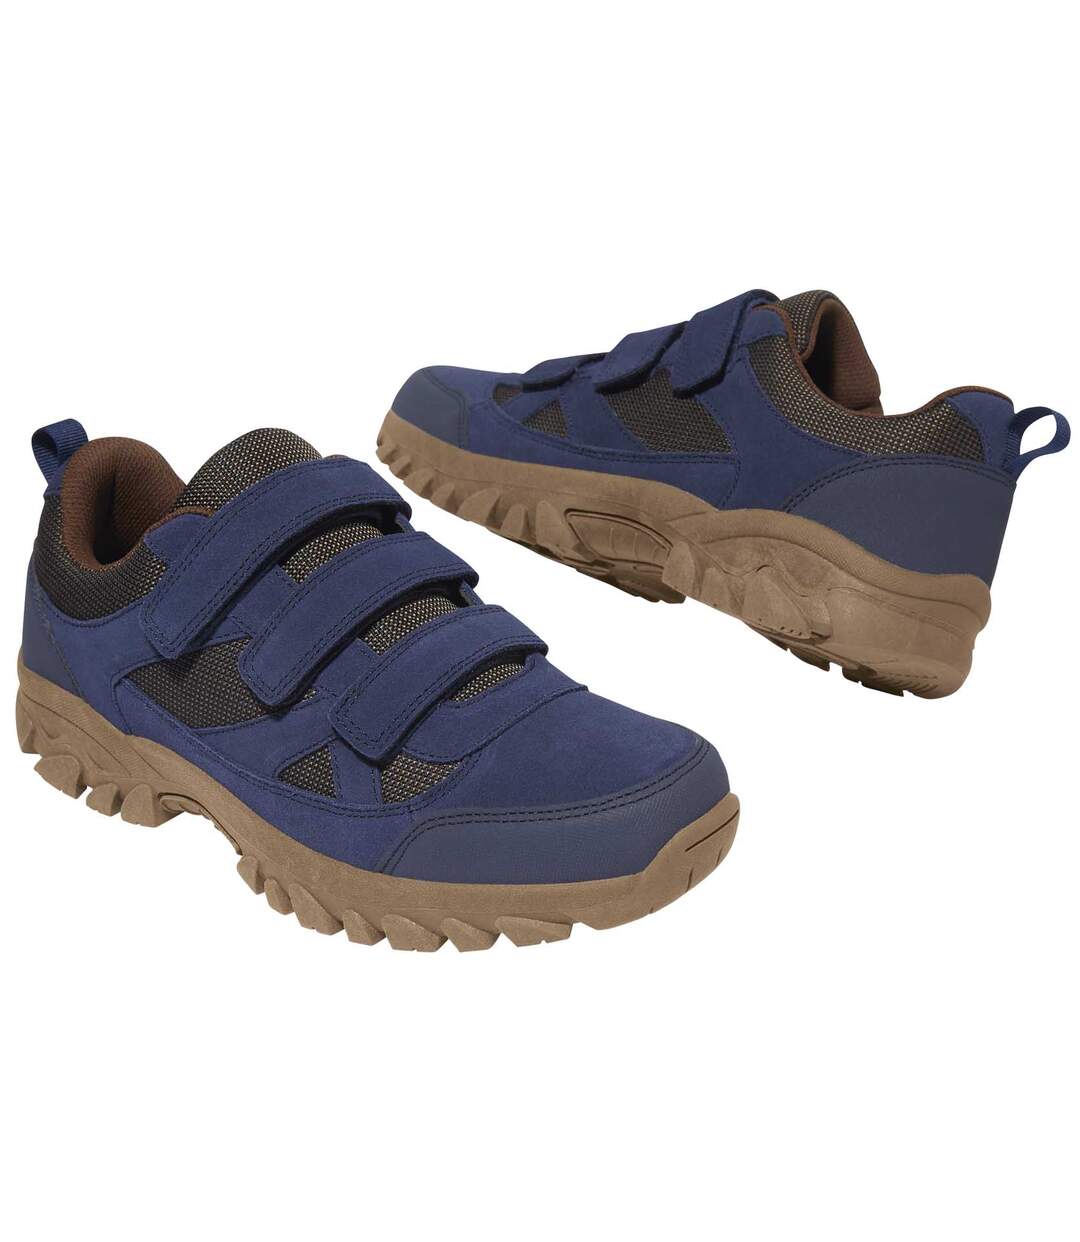 Magnifier Chaussures de randonnée pour Hommes Chaussures de randonnée légères imperméables Respirantes Confortables Chaussures de Marche à la Cheville Baskets antidérapantes,A,39